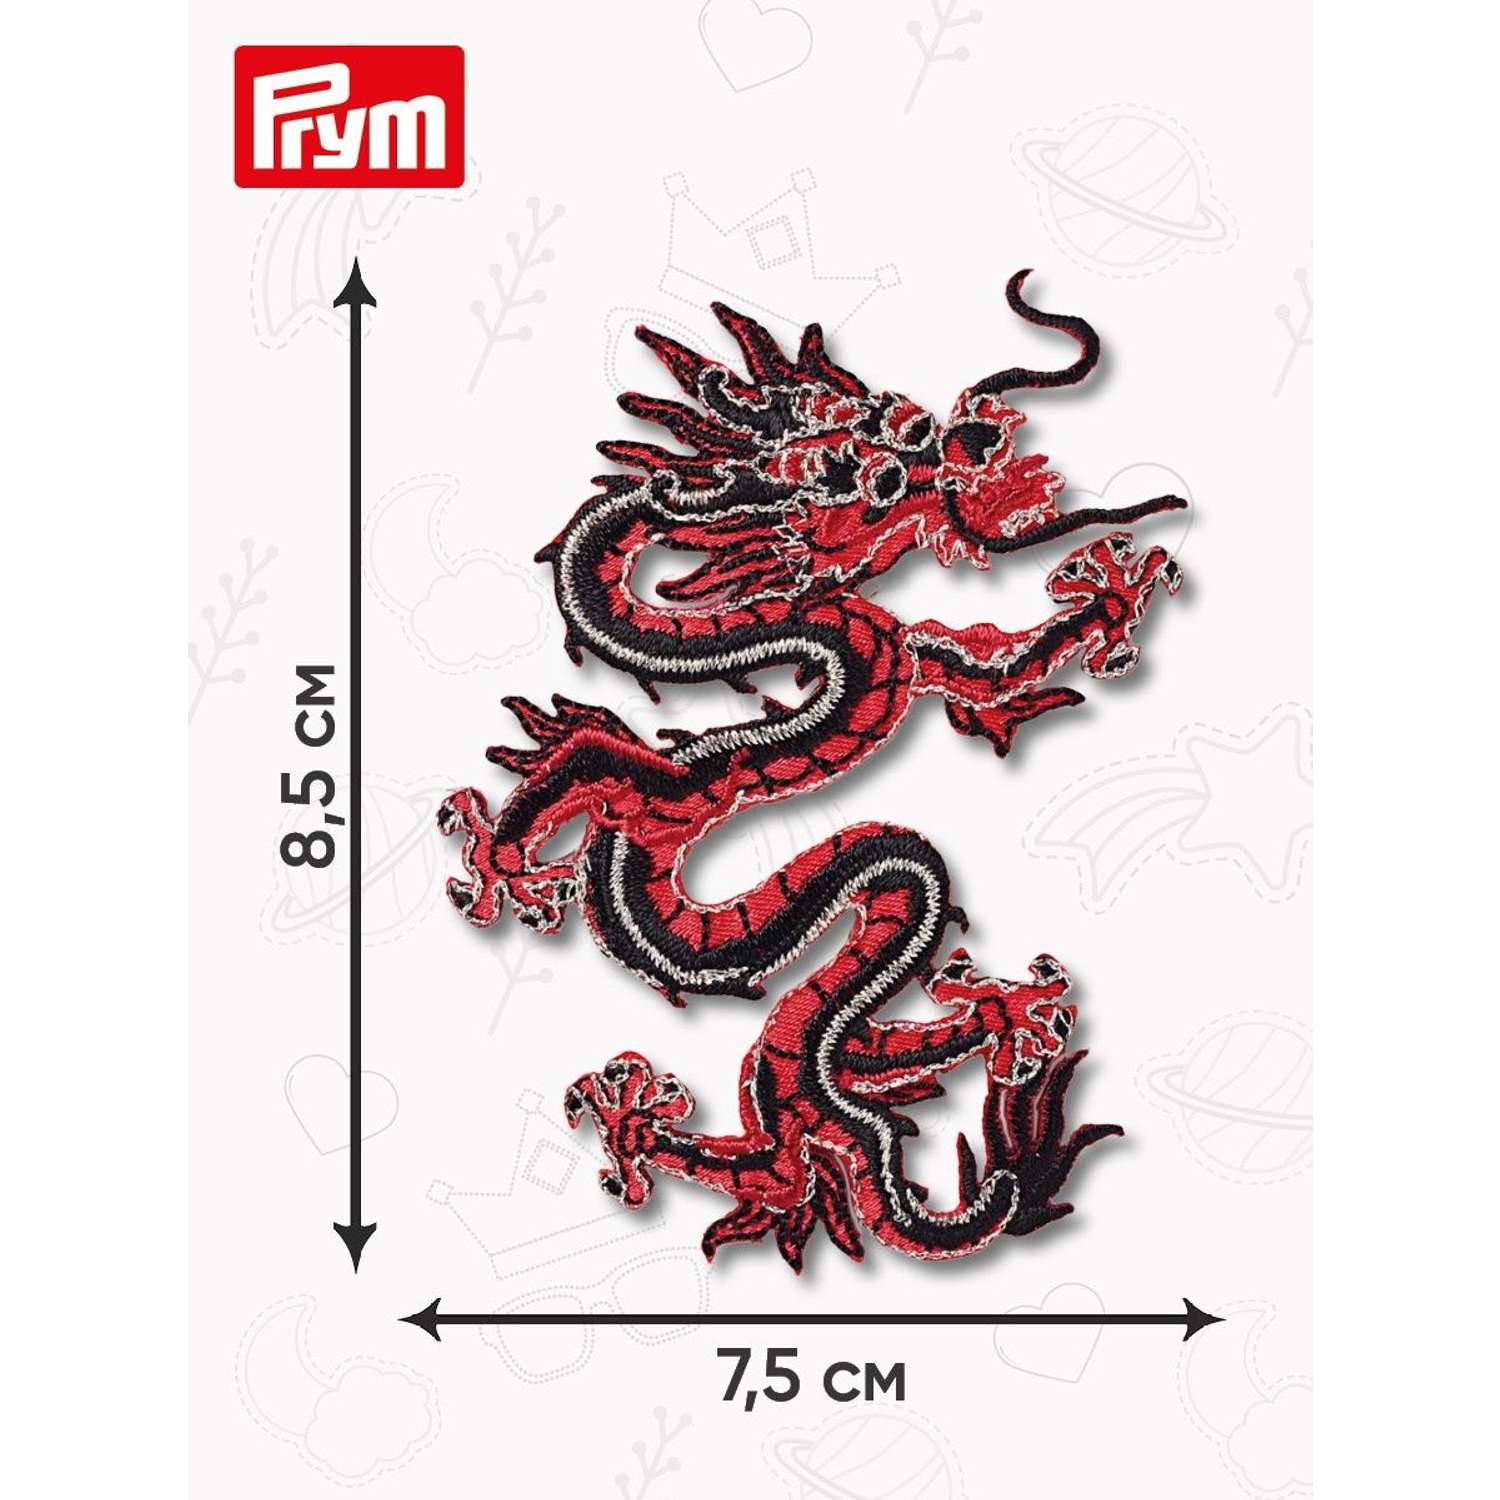 Термоаппликация Prym нашивка Азиатский дракон 8.5х7.5 см для ремонта и украшения одежды 926178 - фото 9